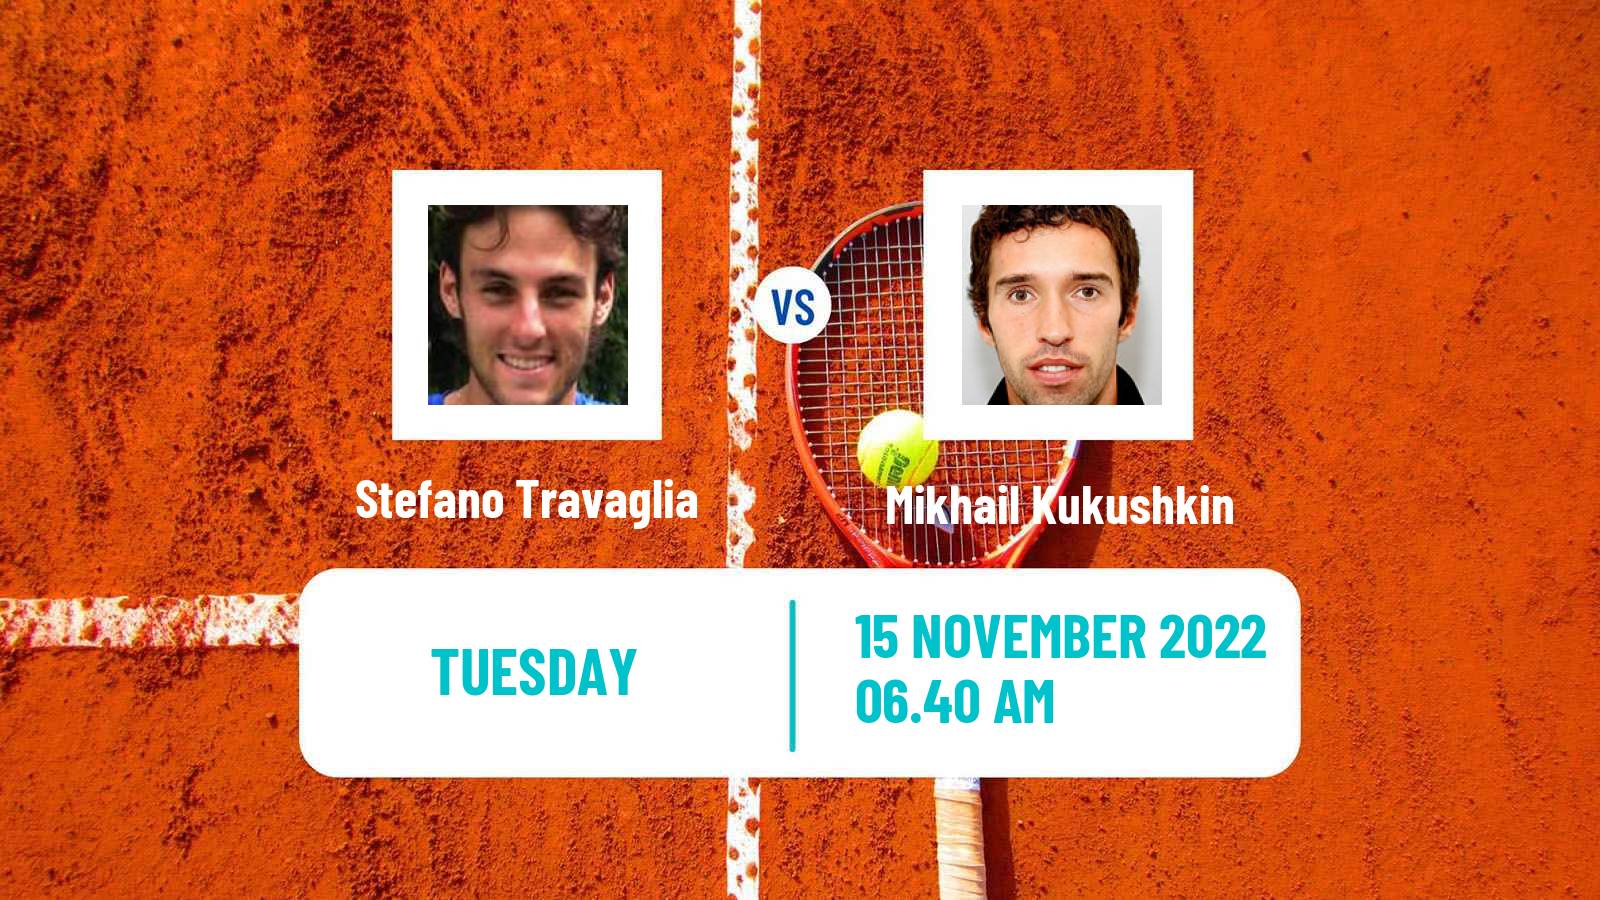 Tennis ATP Challenger Stefano Travaglia - Mikhail Kukushkin